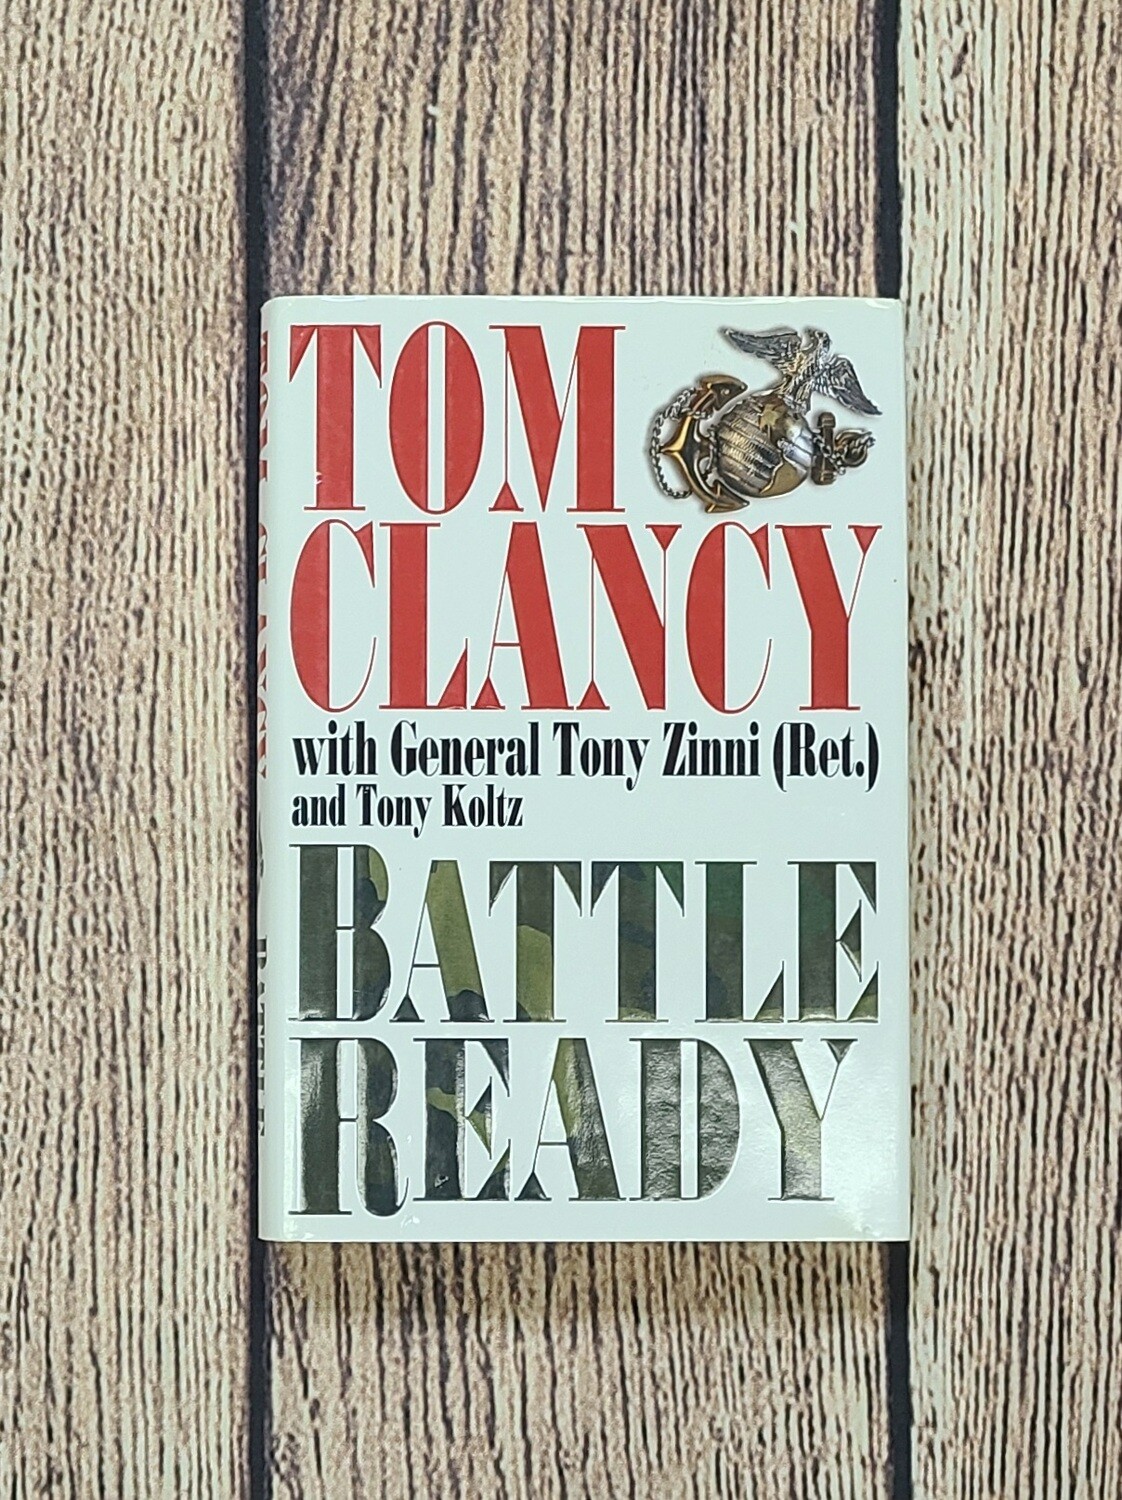 Battle Ready by Tom Clancy with General Tony Zinni and Tony Koltz